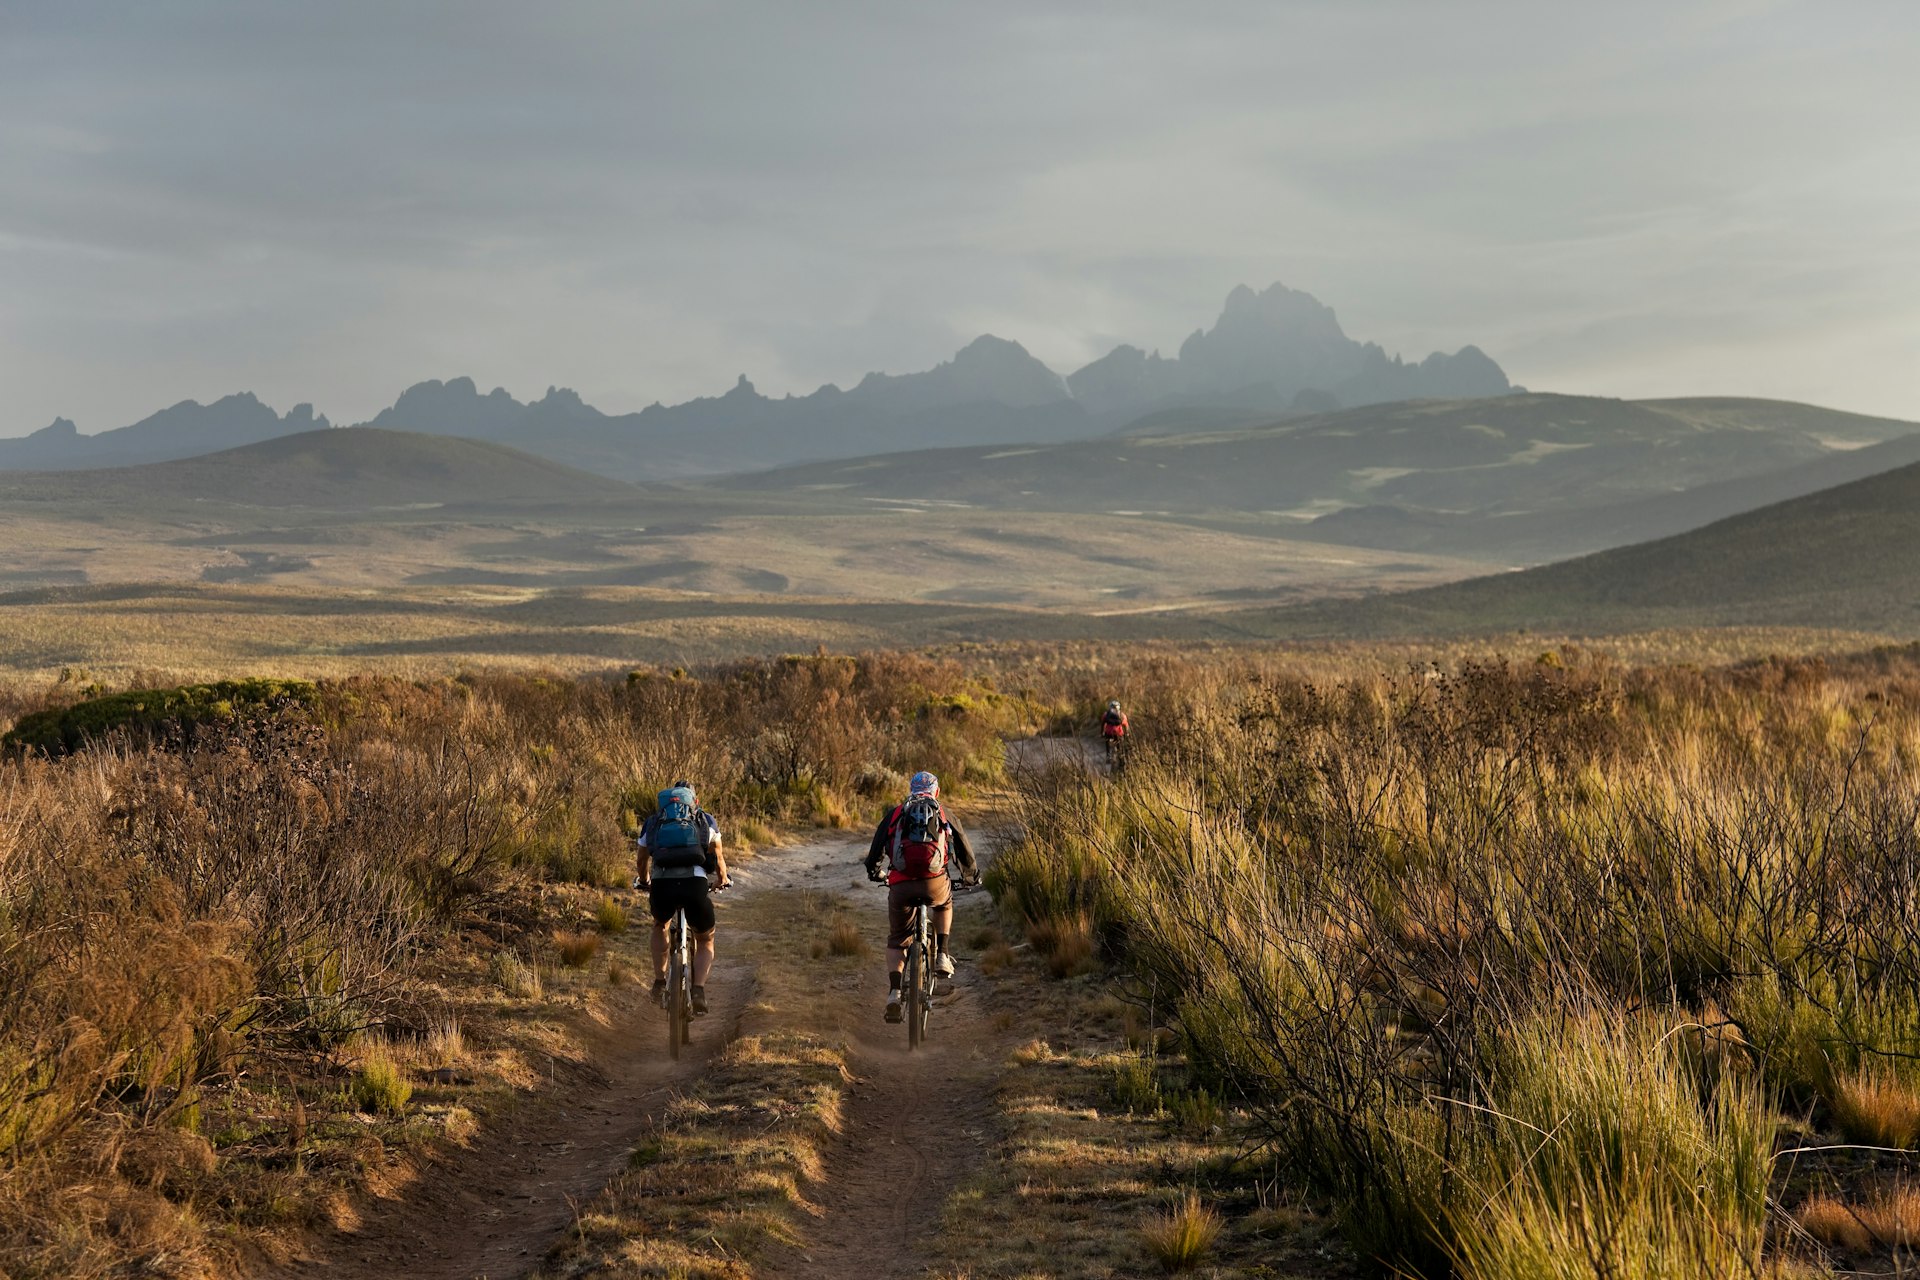 Afternoon mountain biking at Mt. Kenya